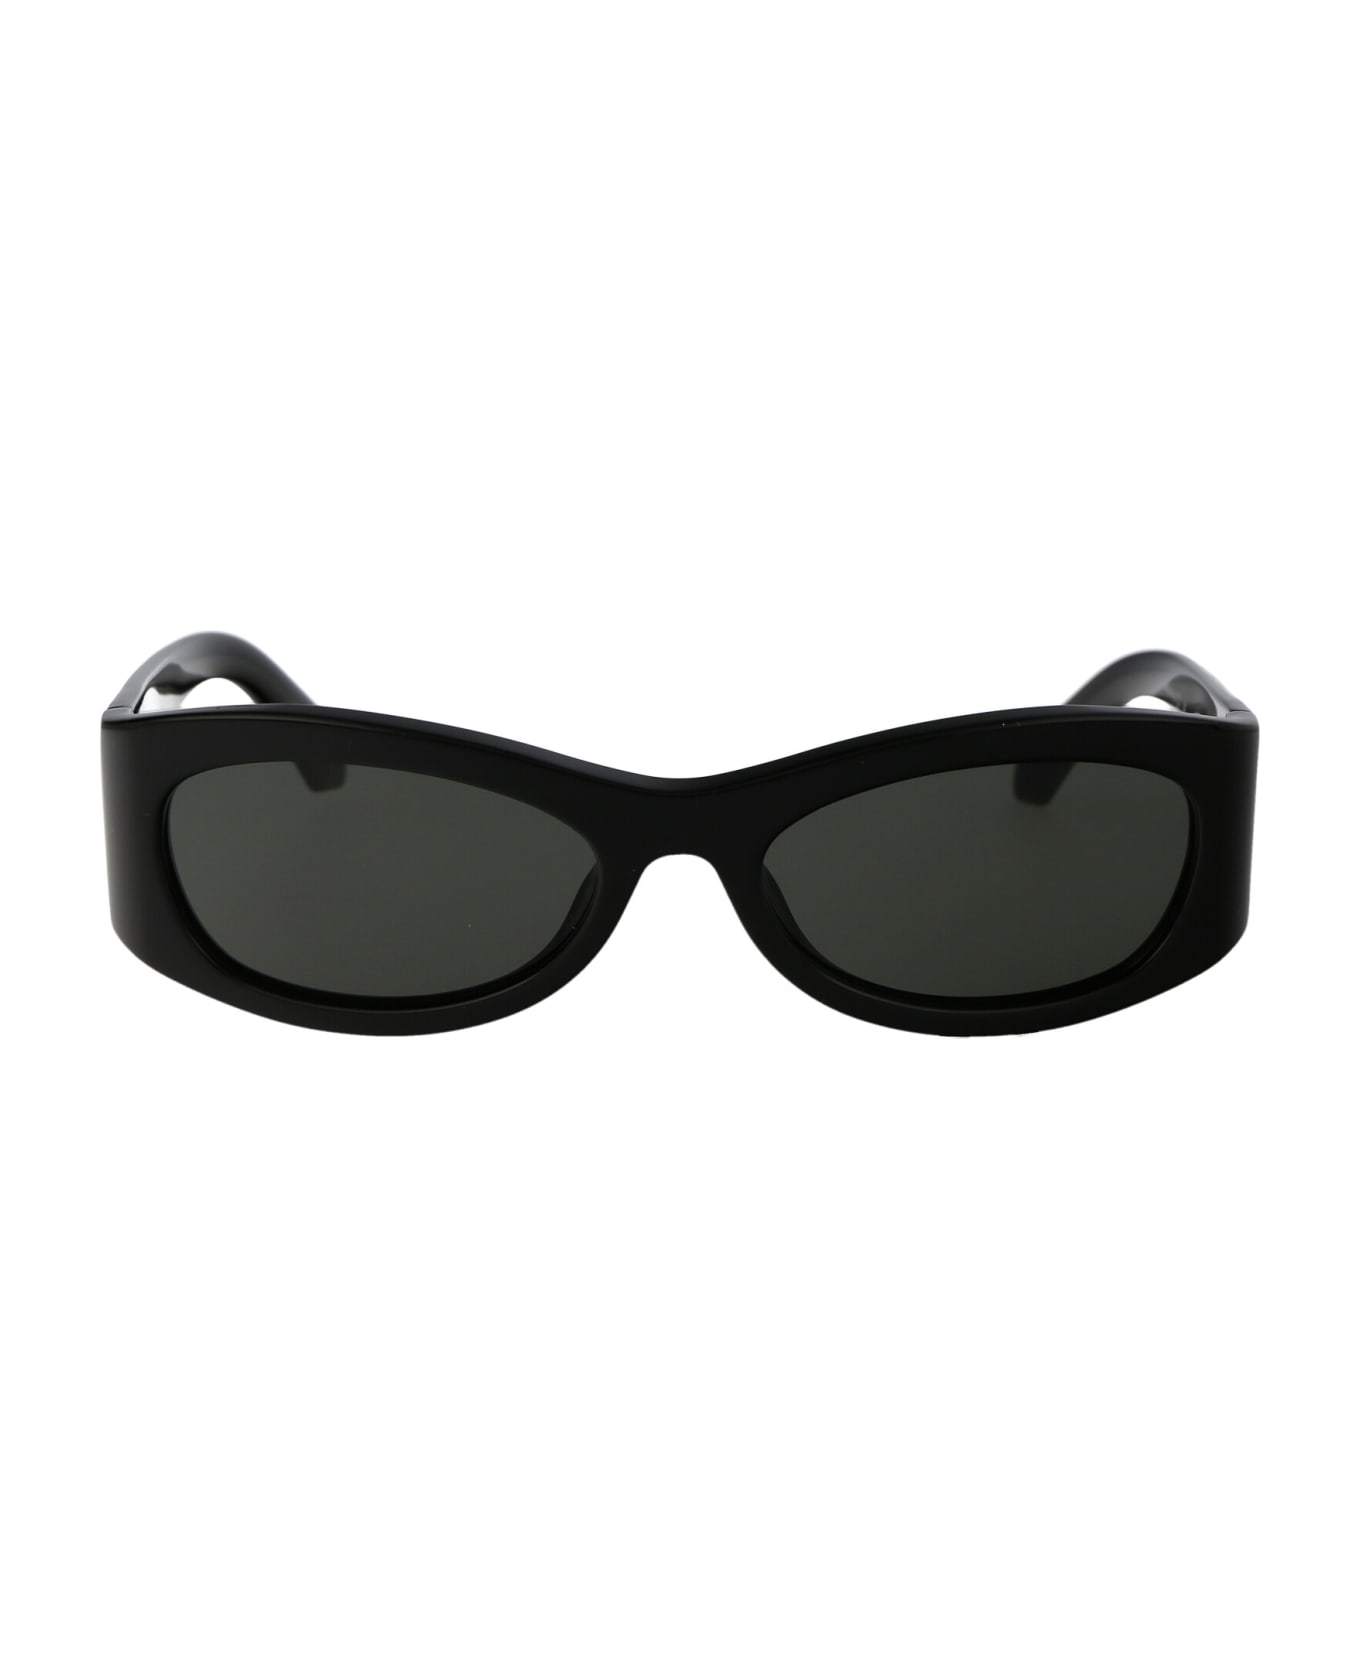 AMBUSH Bernie Sunglasses - 1007 BLACK